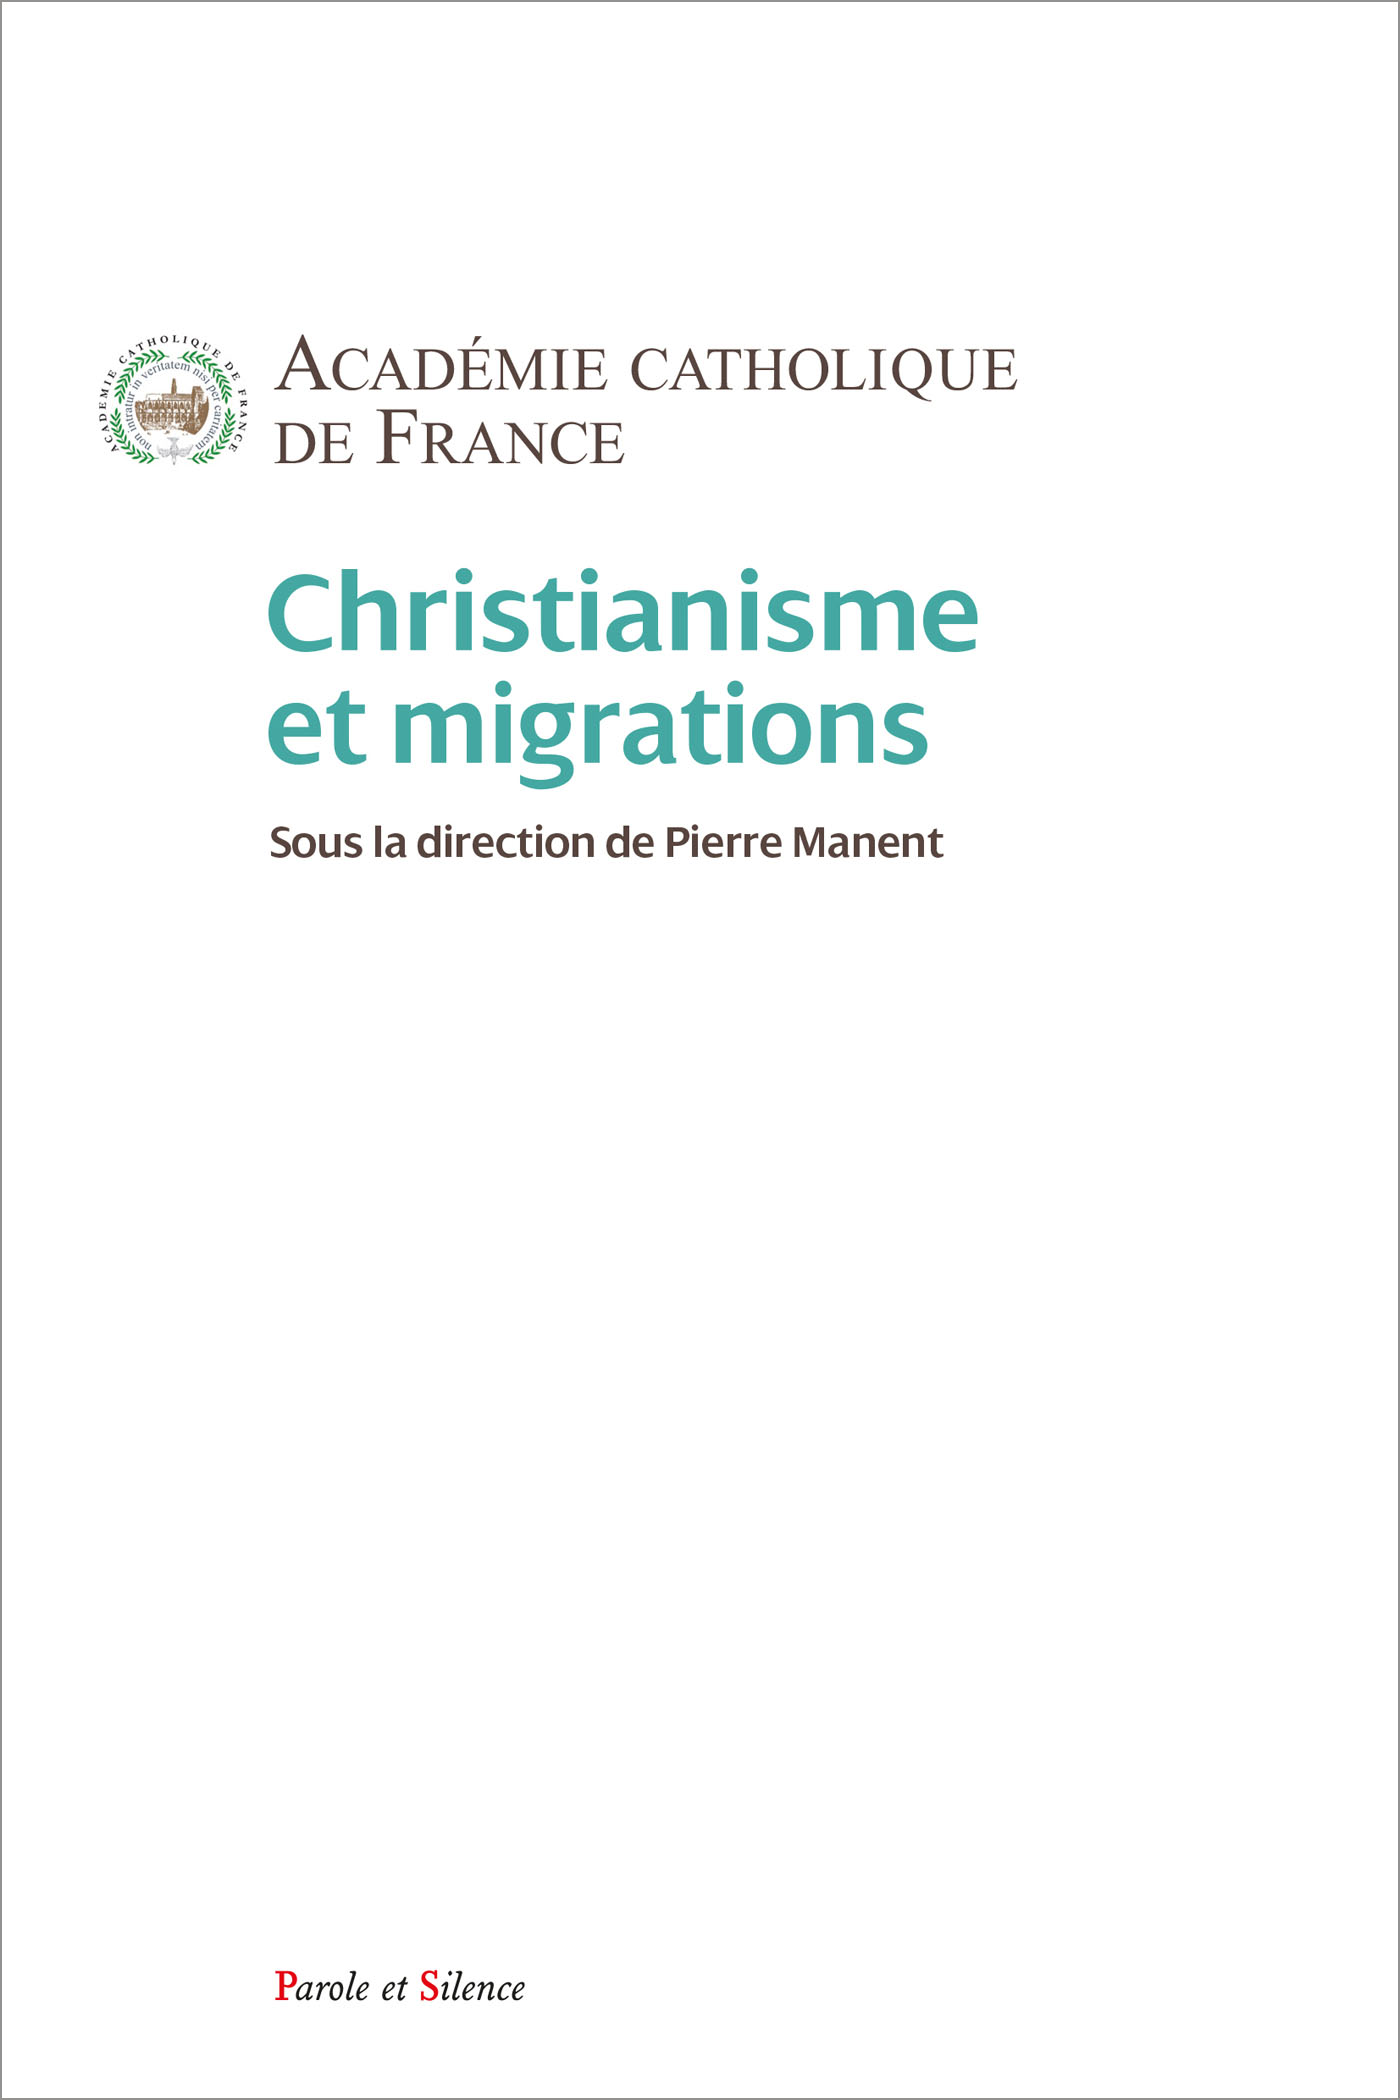 Christianisme et migrations